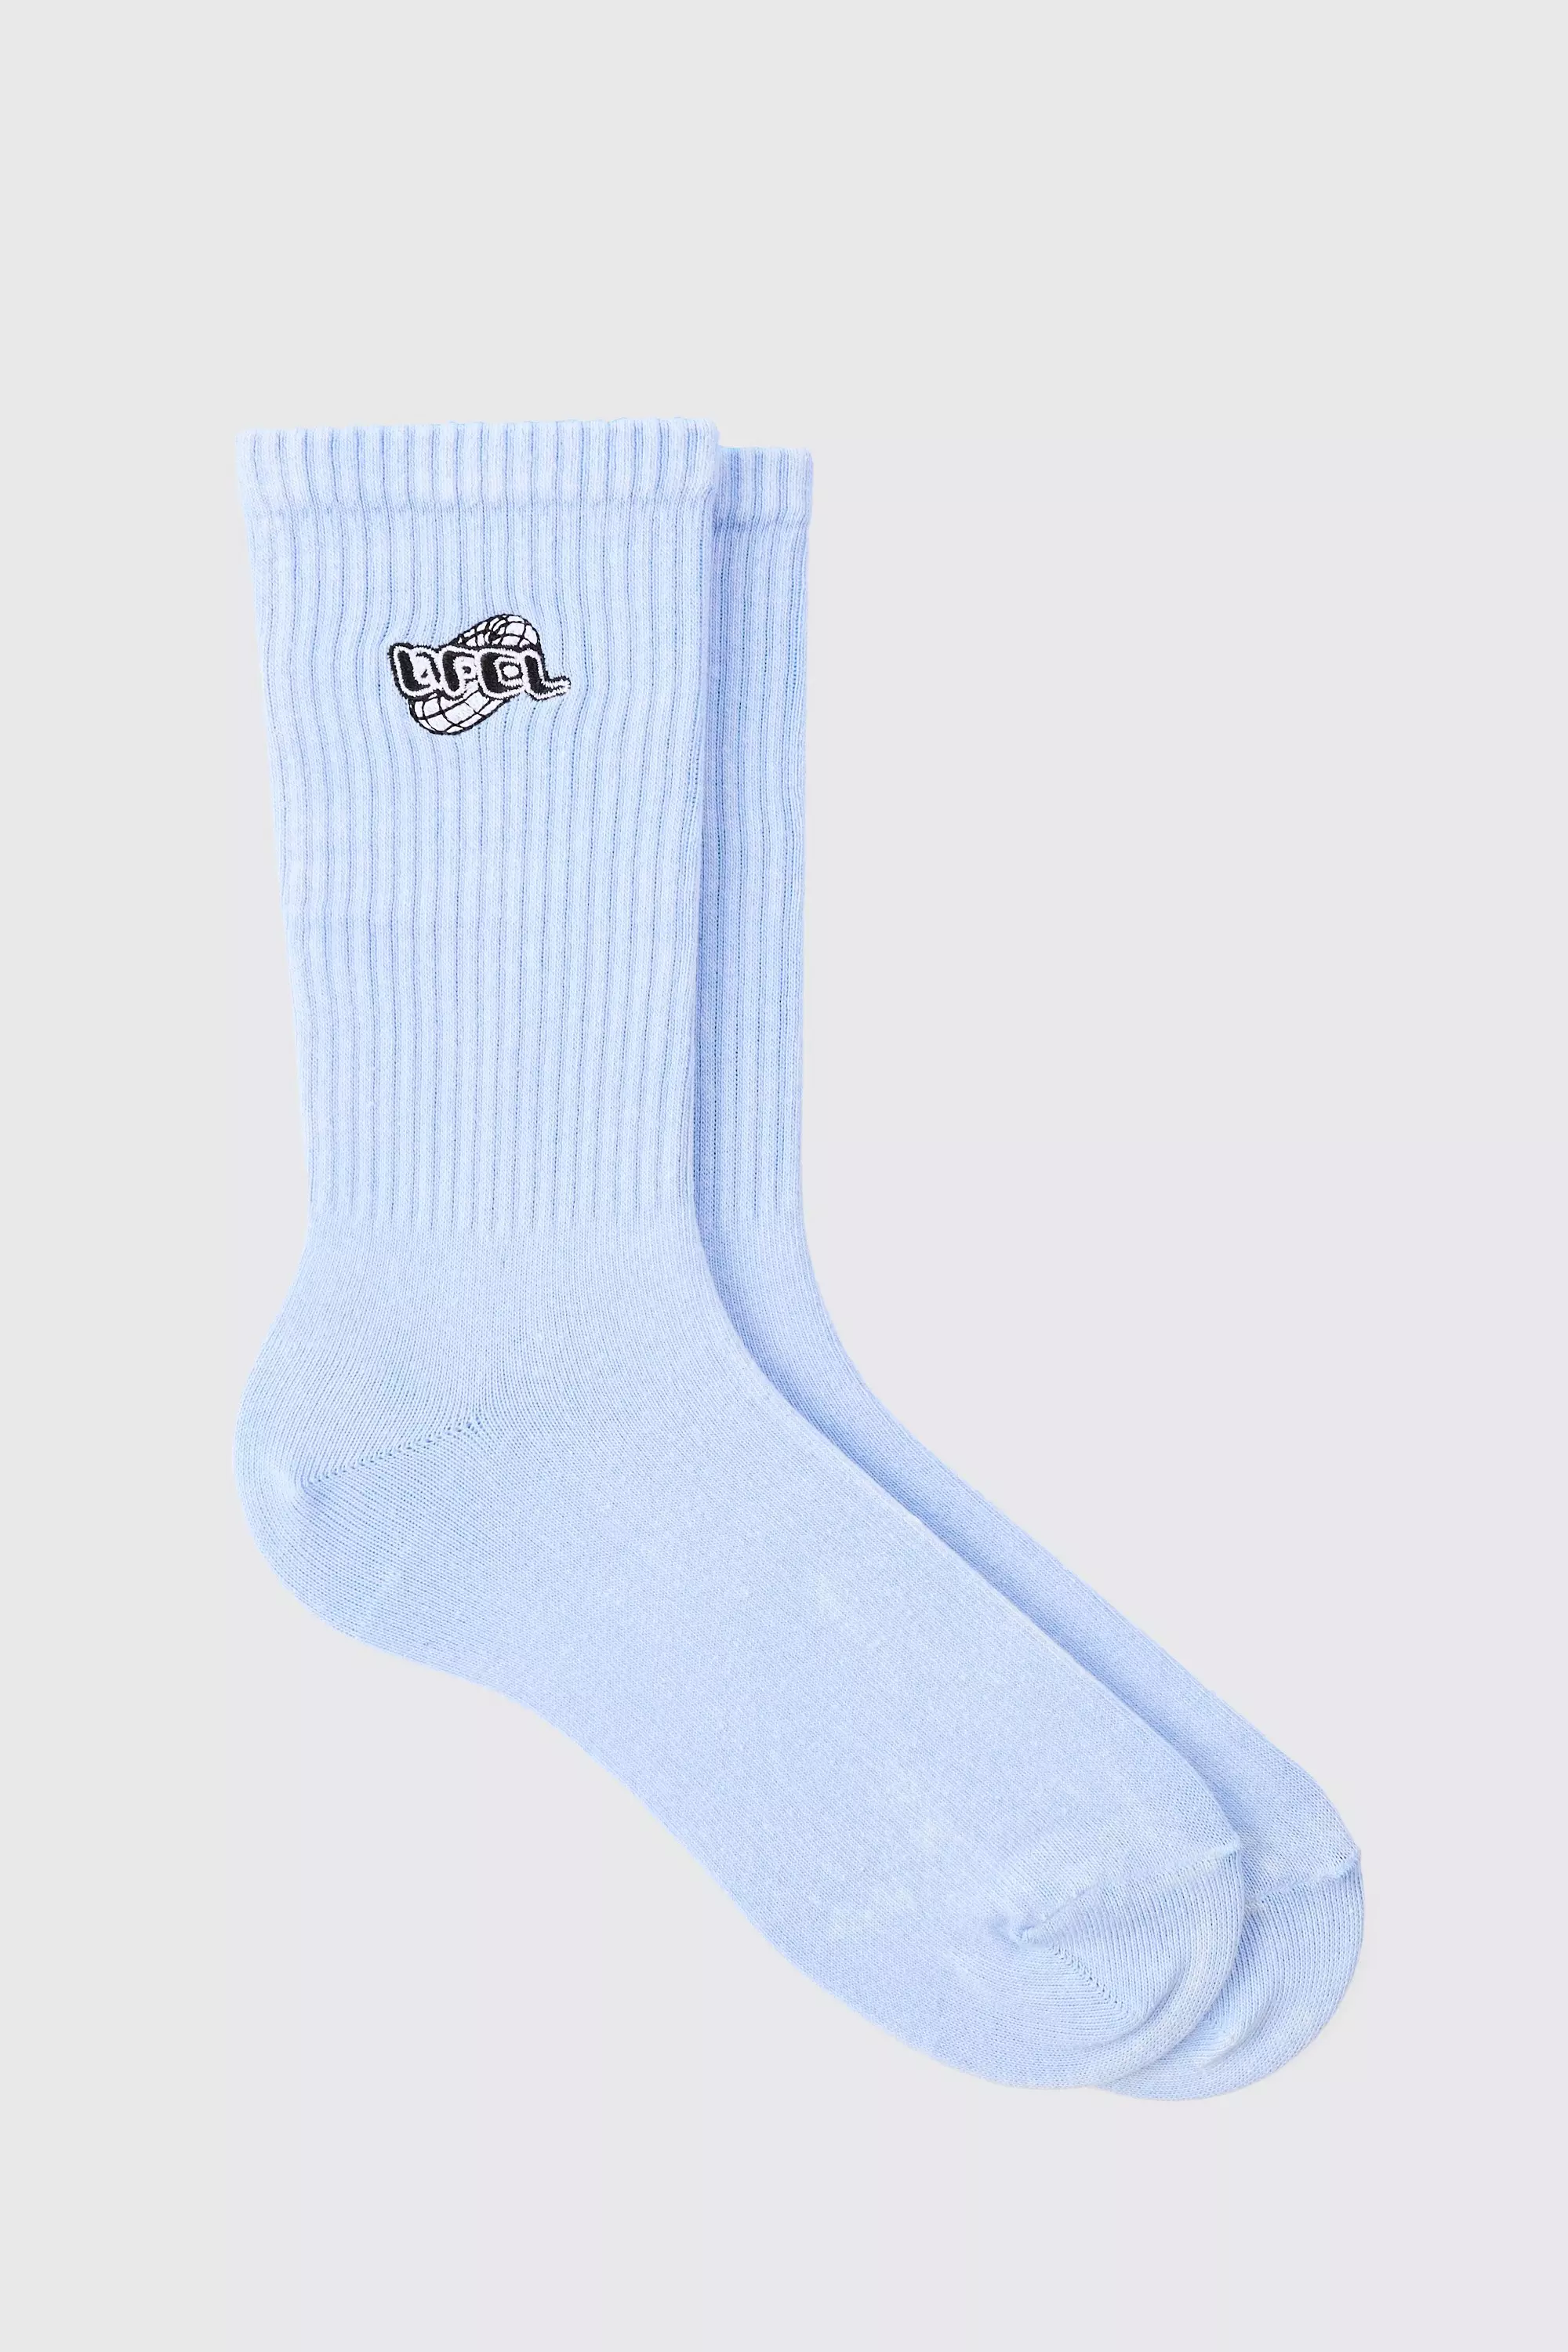 Acid Wash Ofcl Embroidered Socks In Light Blue Light blue